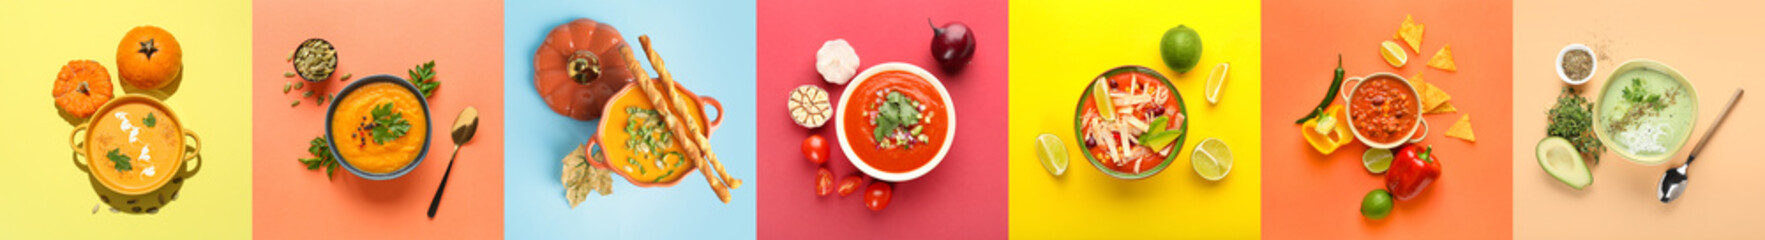 Set of tasty soups on color background